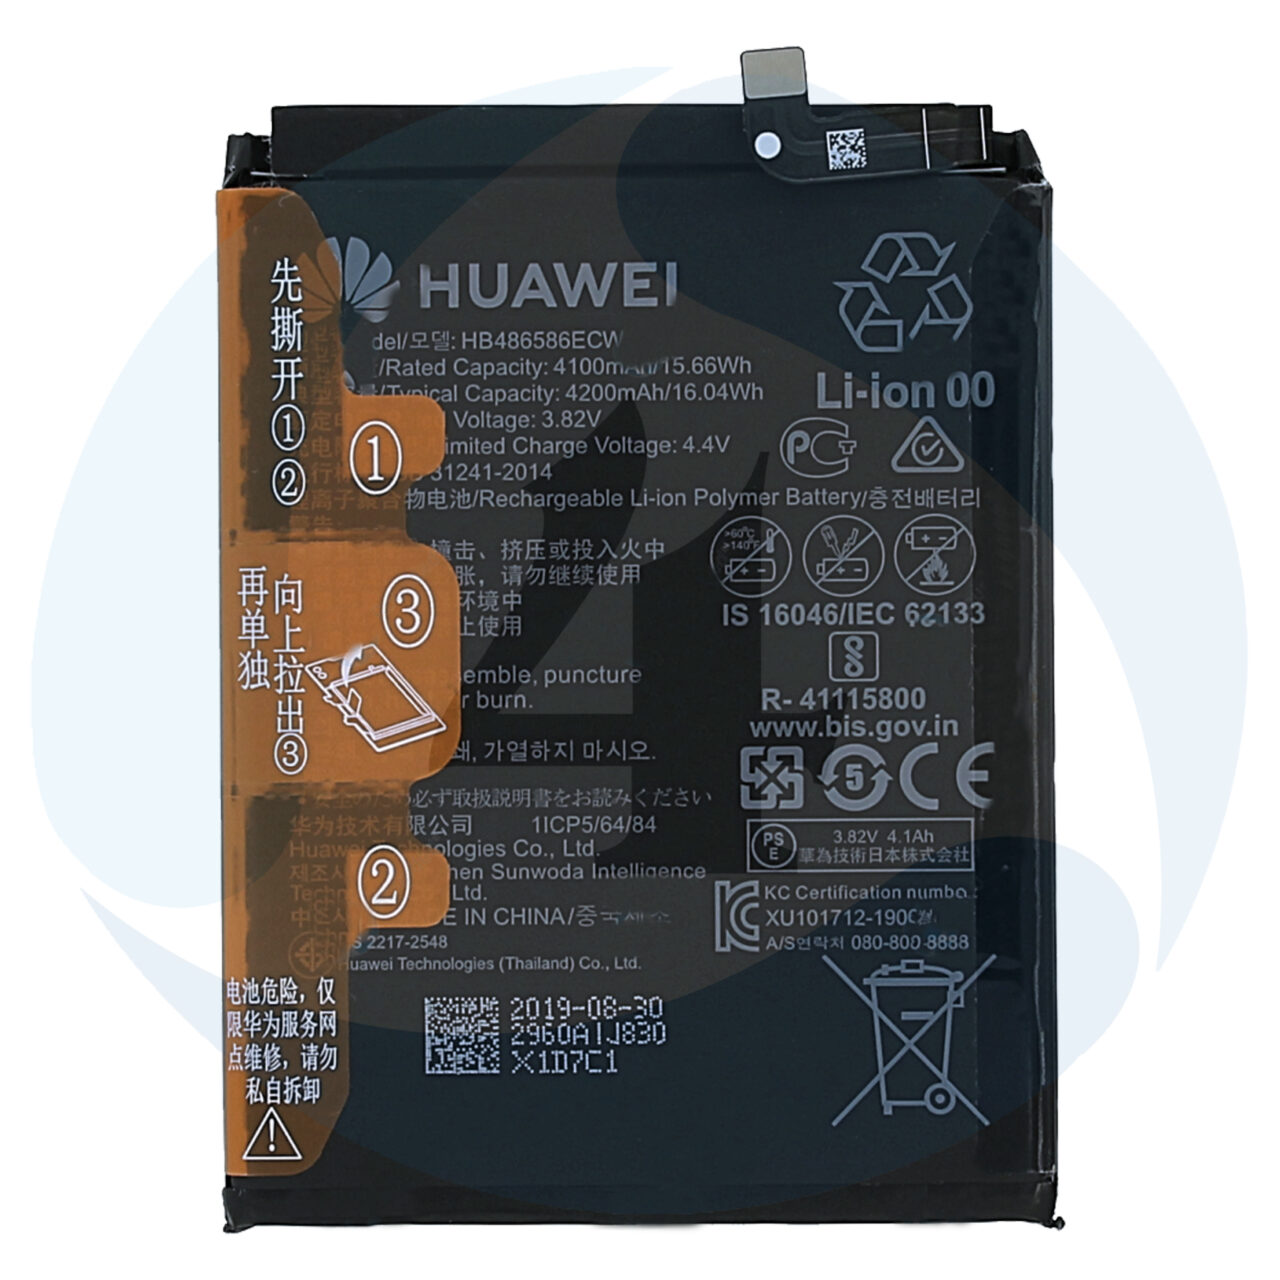 Huawei P40lite tas l09 tas l29 battery hb486586ecw 4200mah